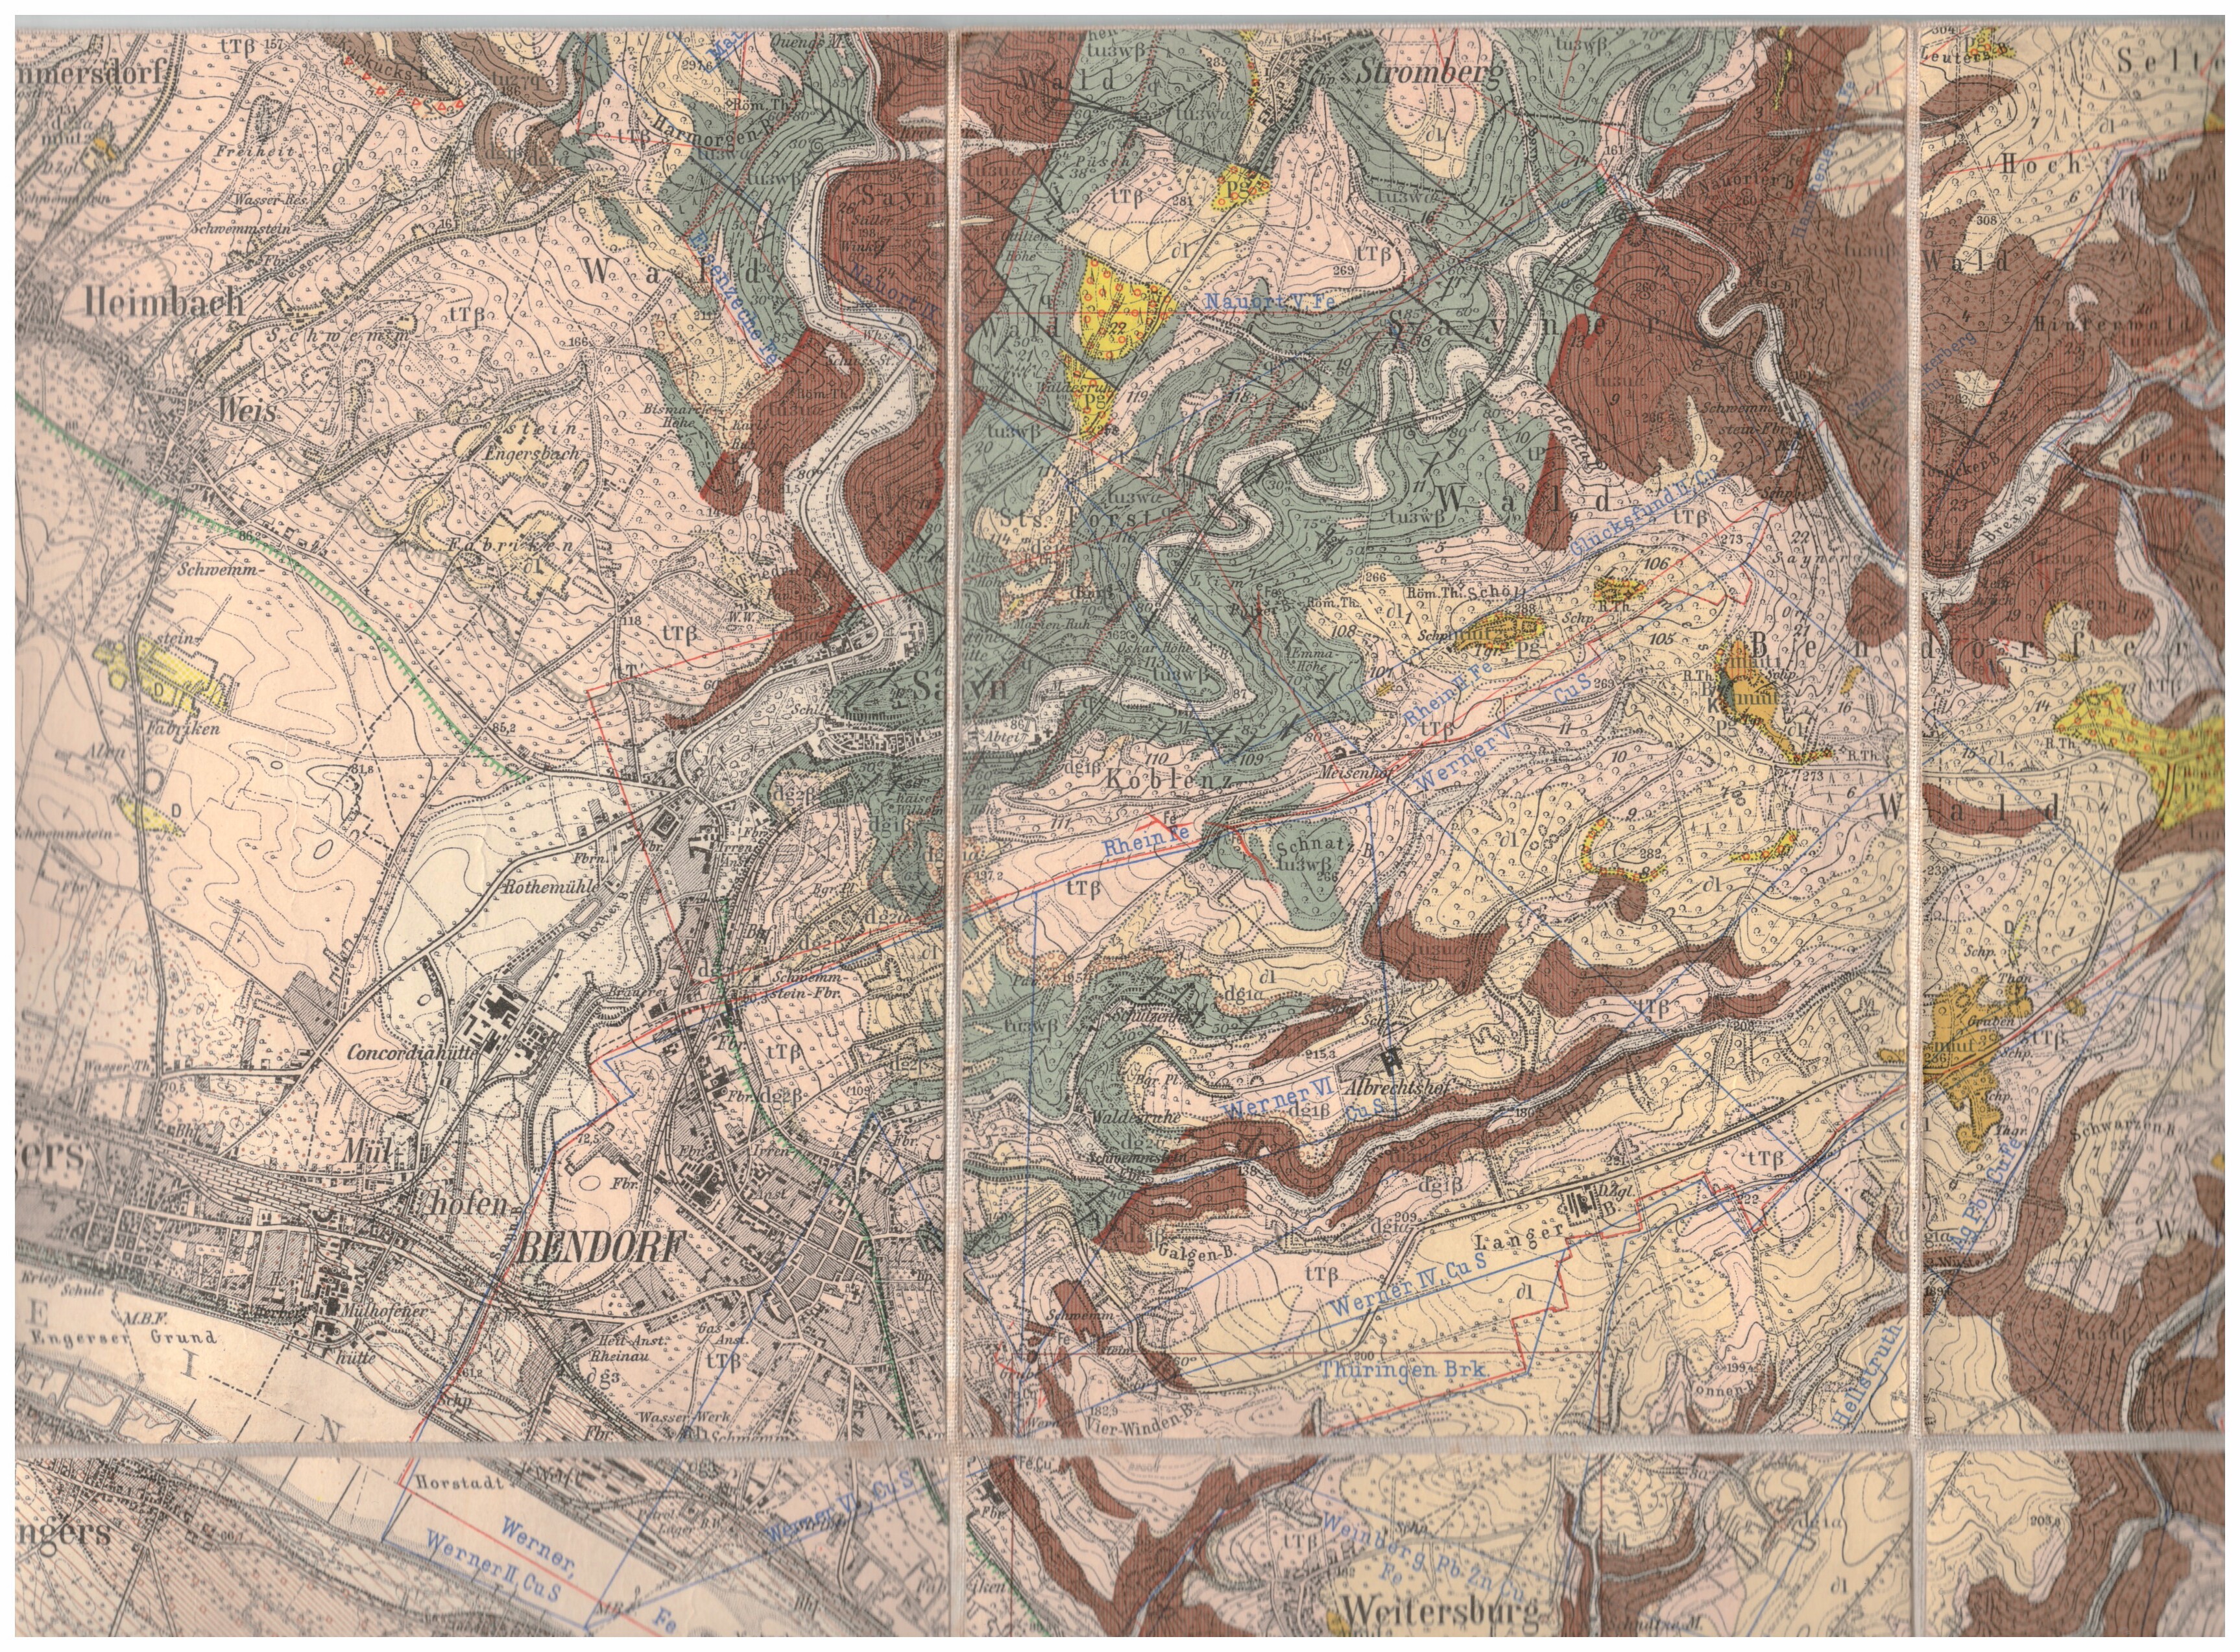 Geologische Karte Bendorf, 1927 (Stiftung Sayner Hütte, Rheinisches Eisenkunstguss-Museum CC BY-NC-SA)